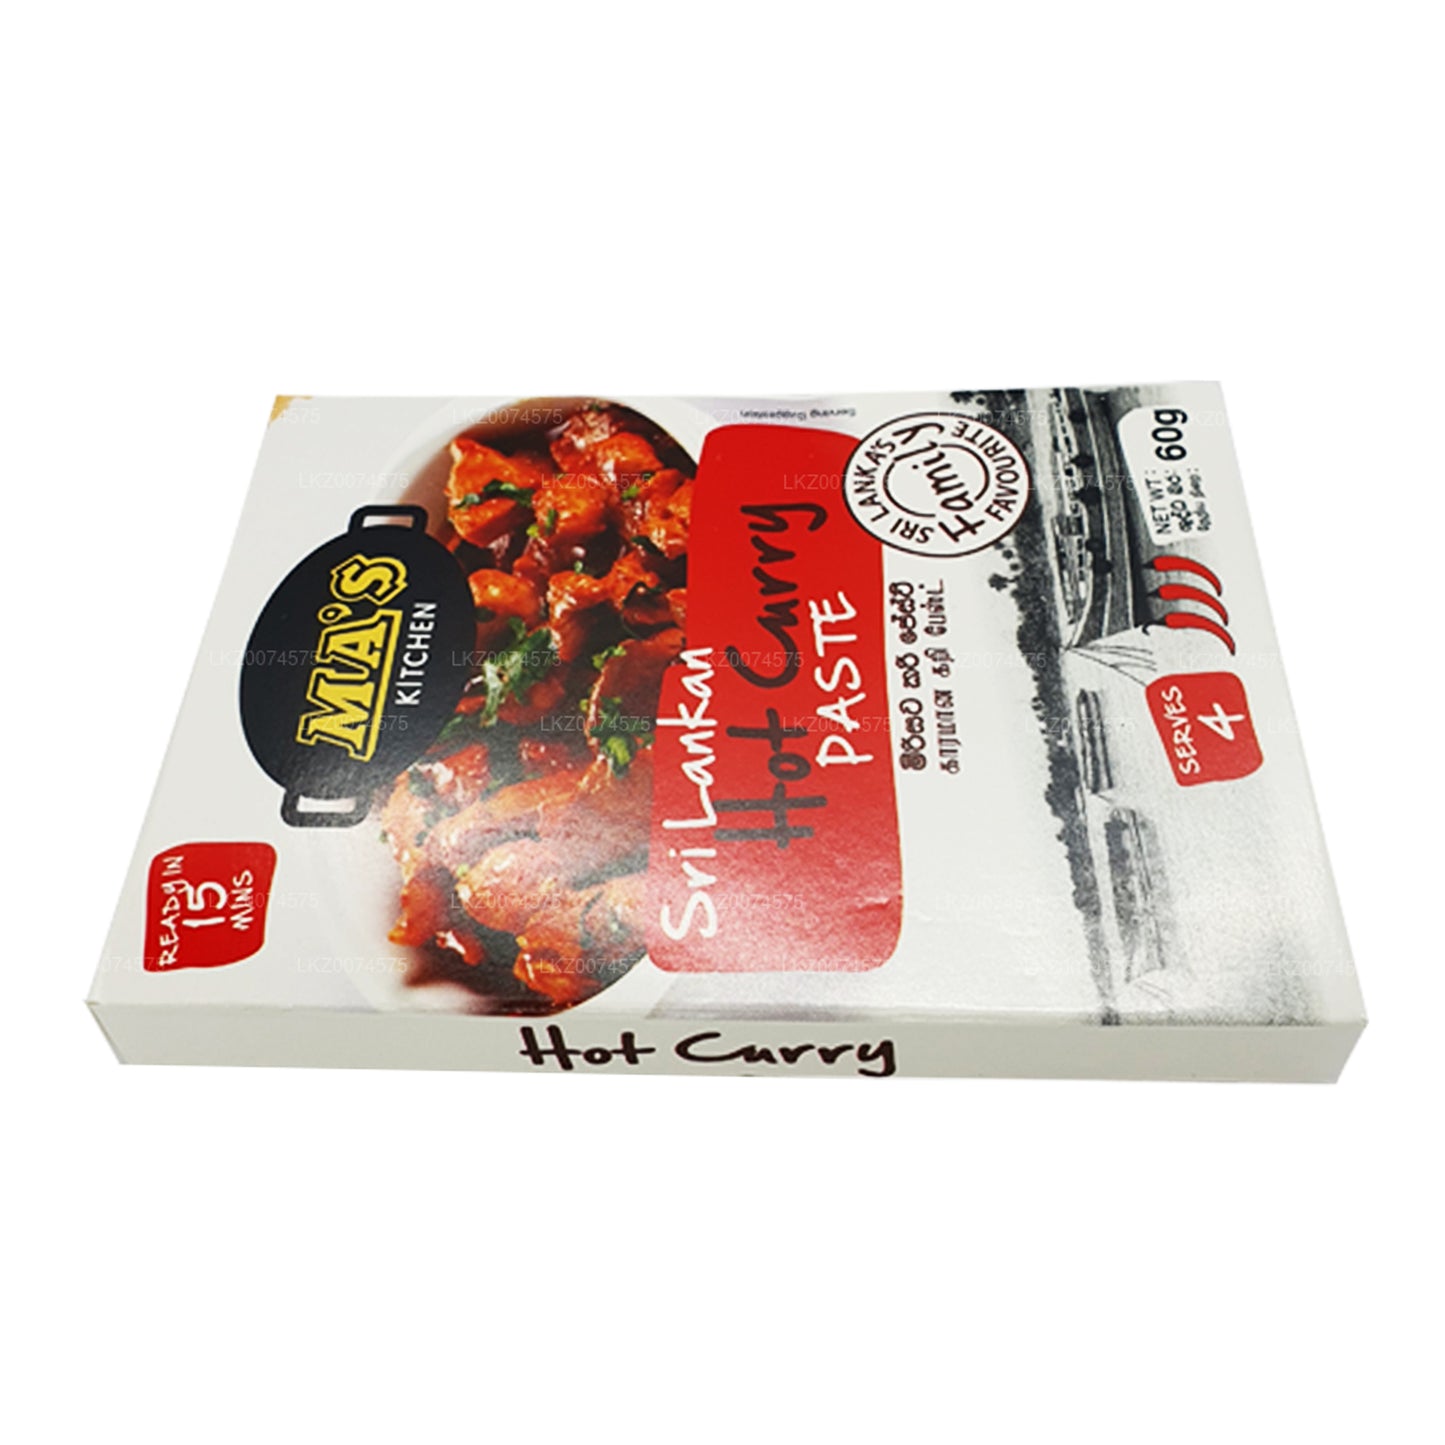 MA's Kitchen Sri Lanki Hot Curry Pasta (60g)